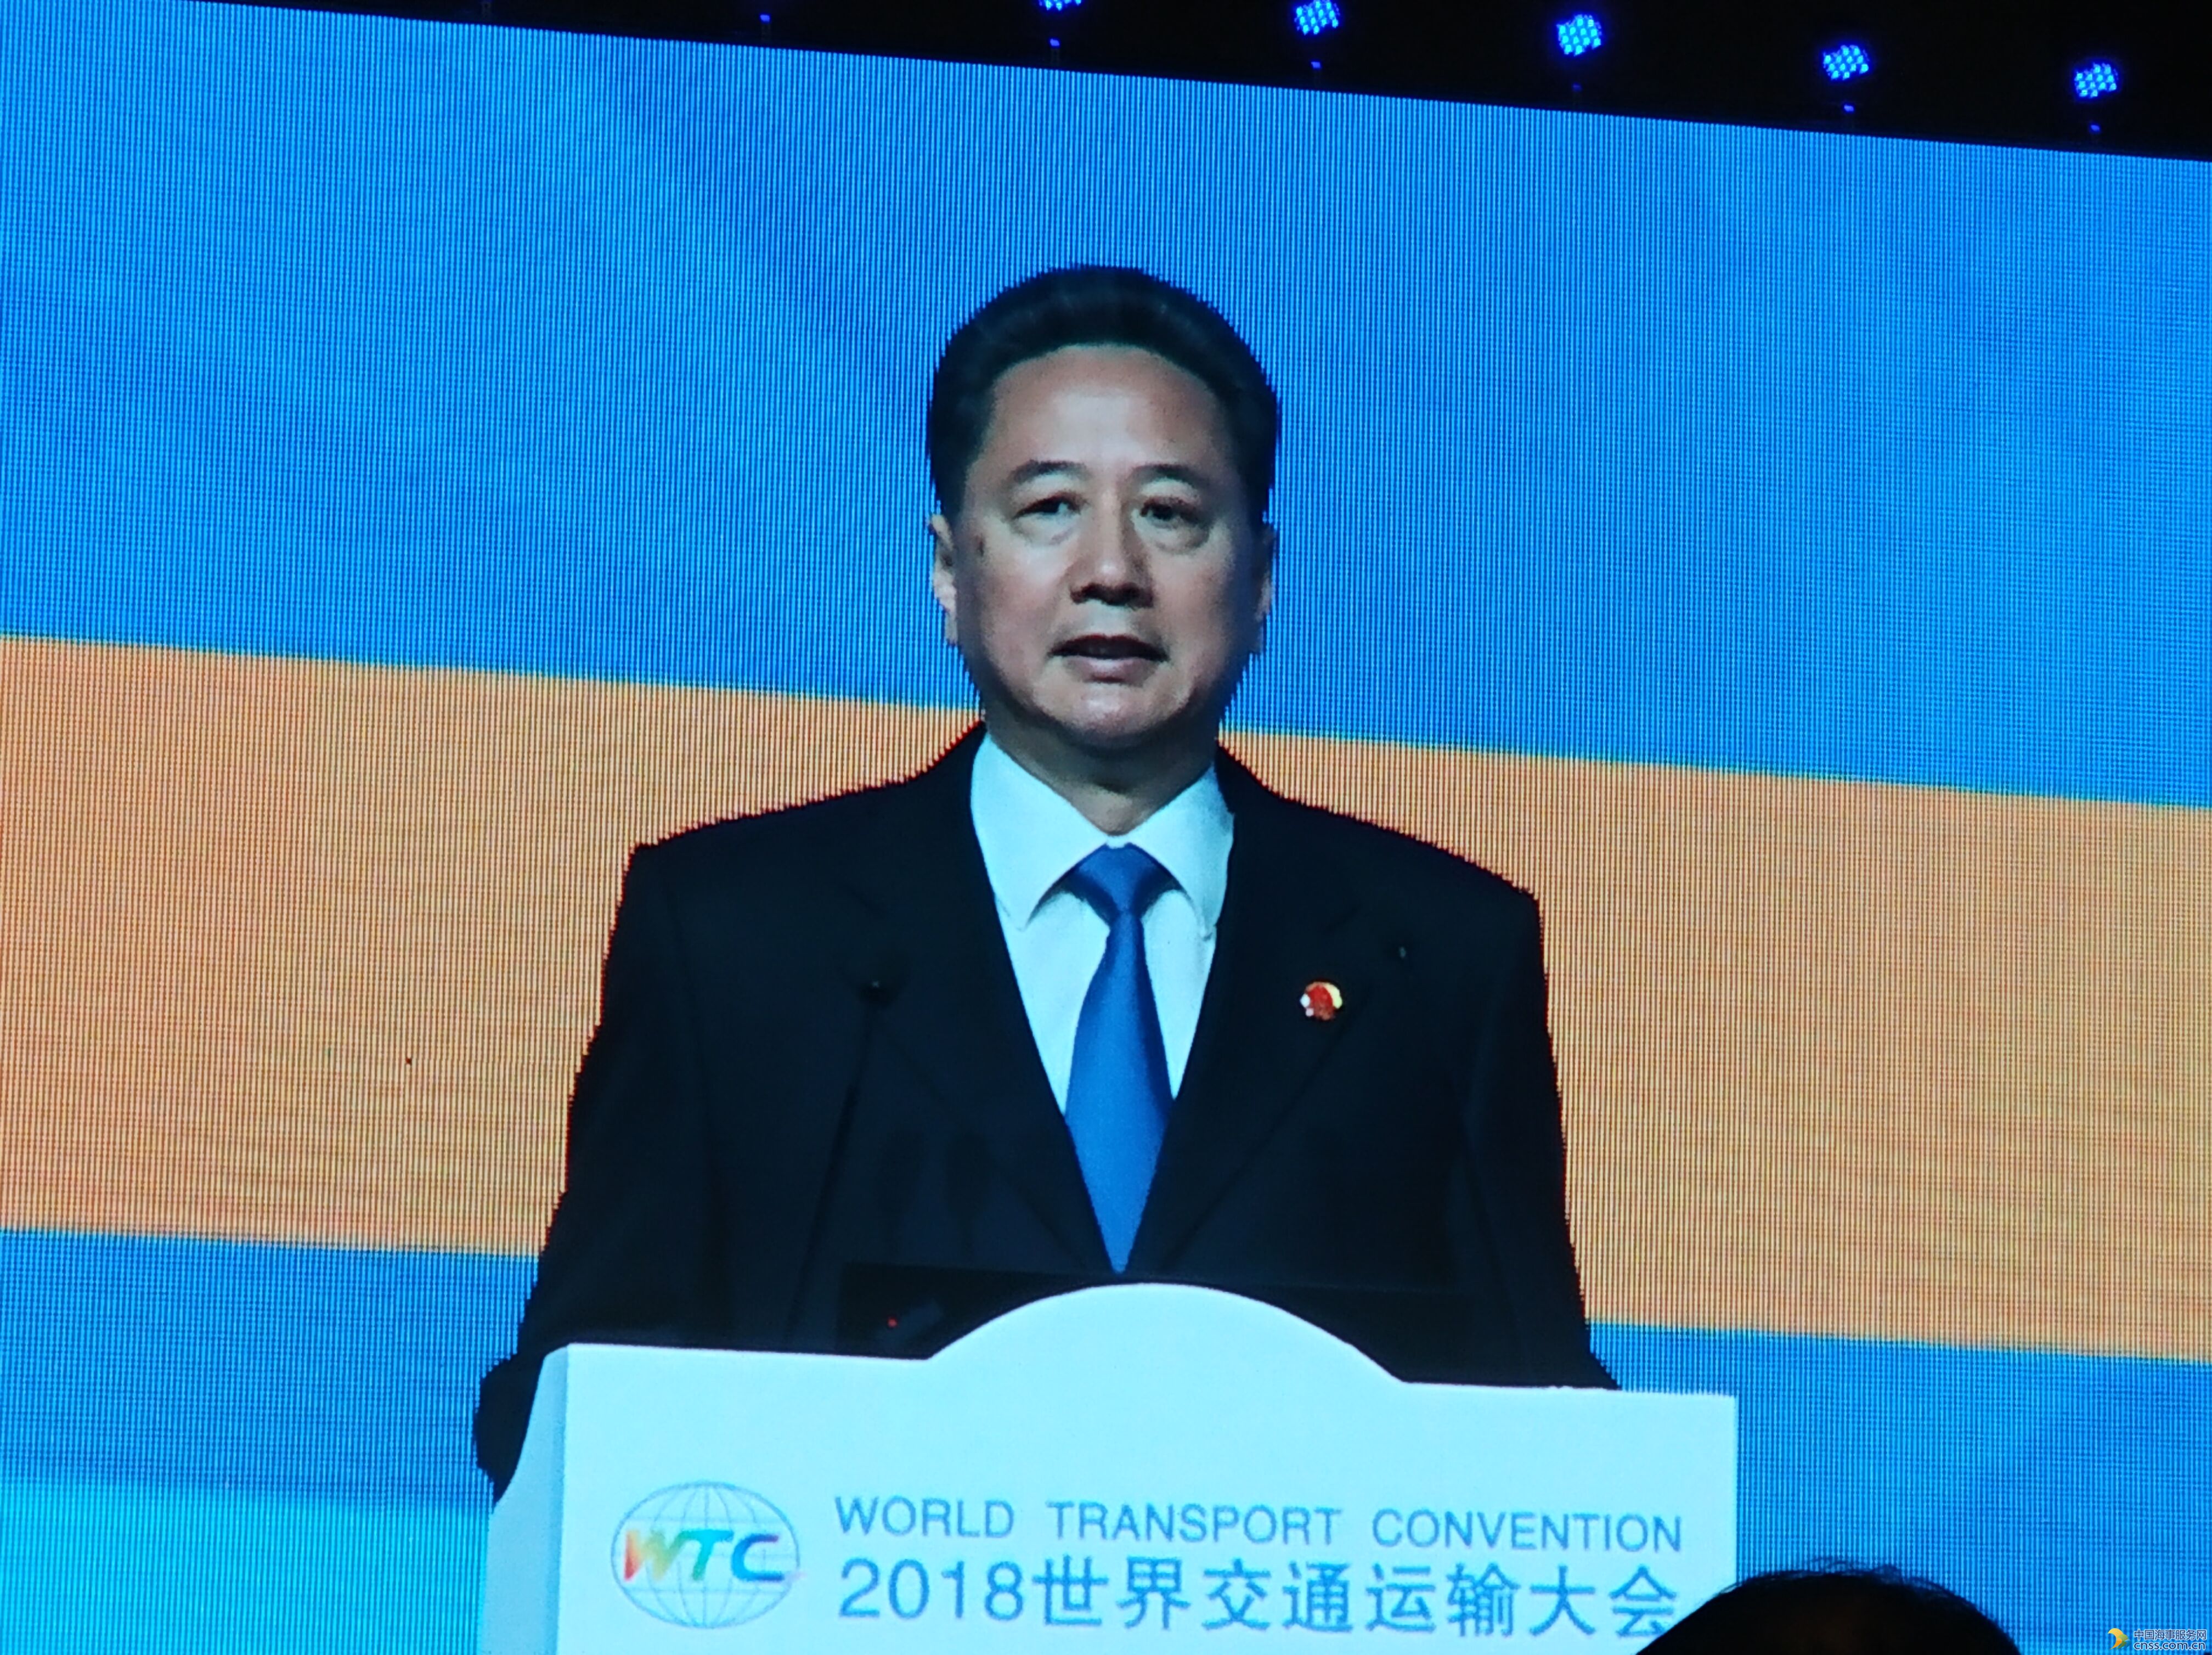 2018世界交通运输大会在北京隆重开幕